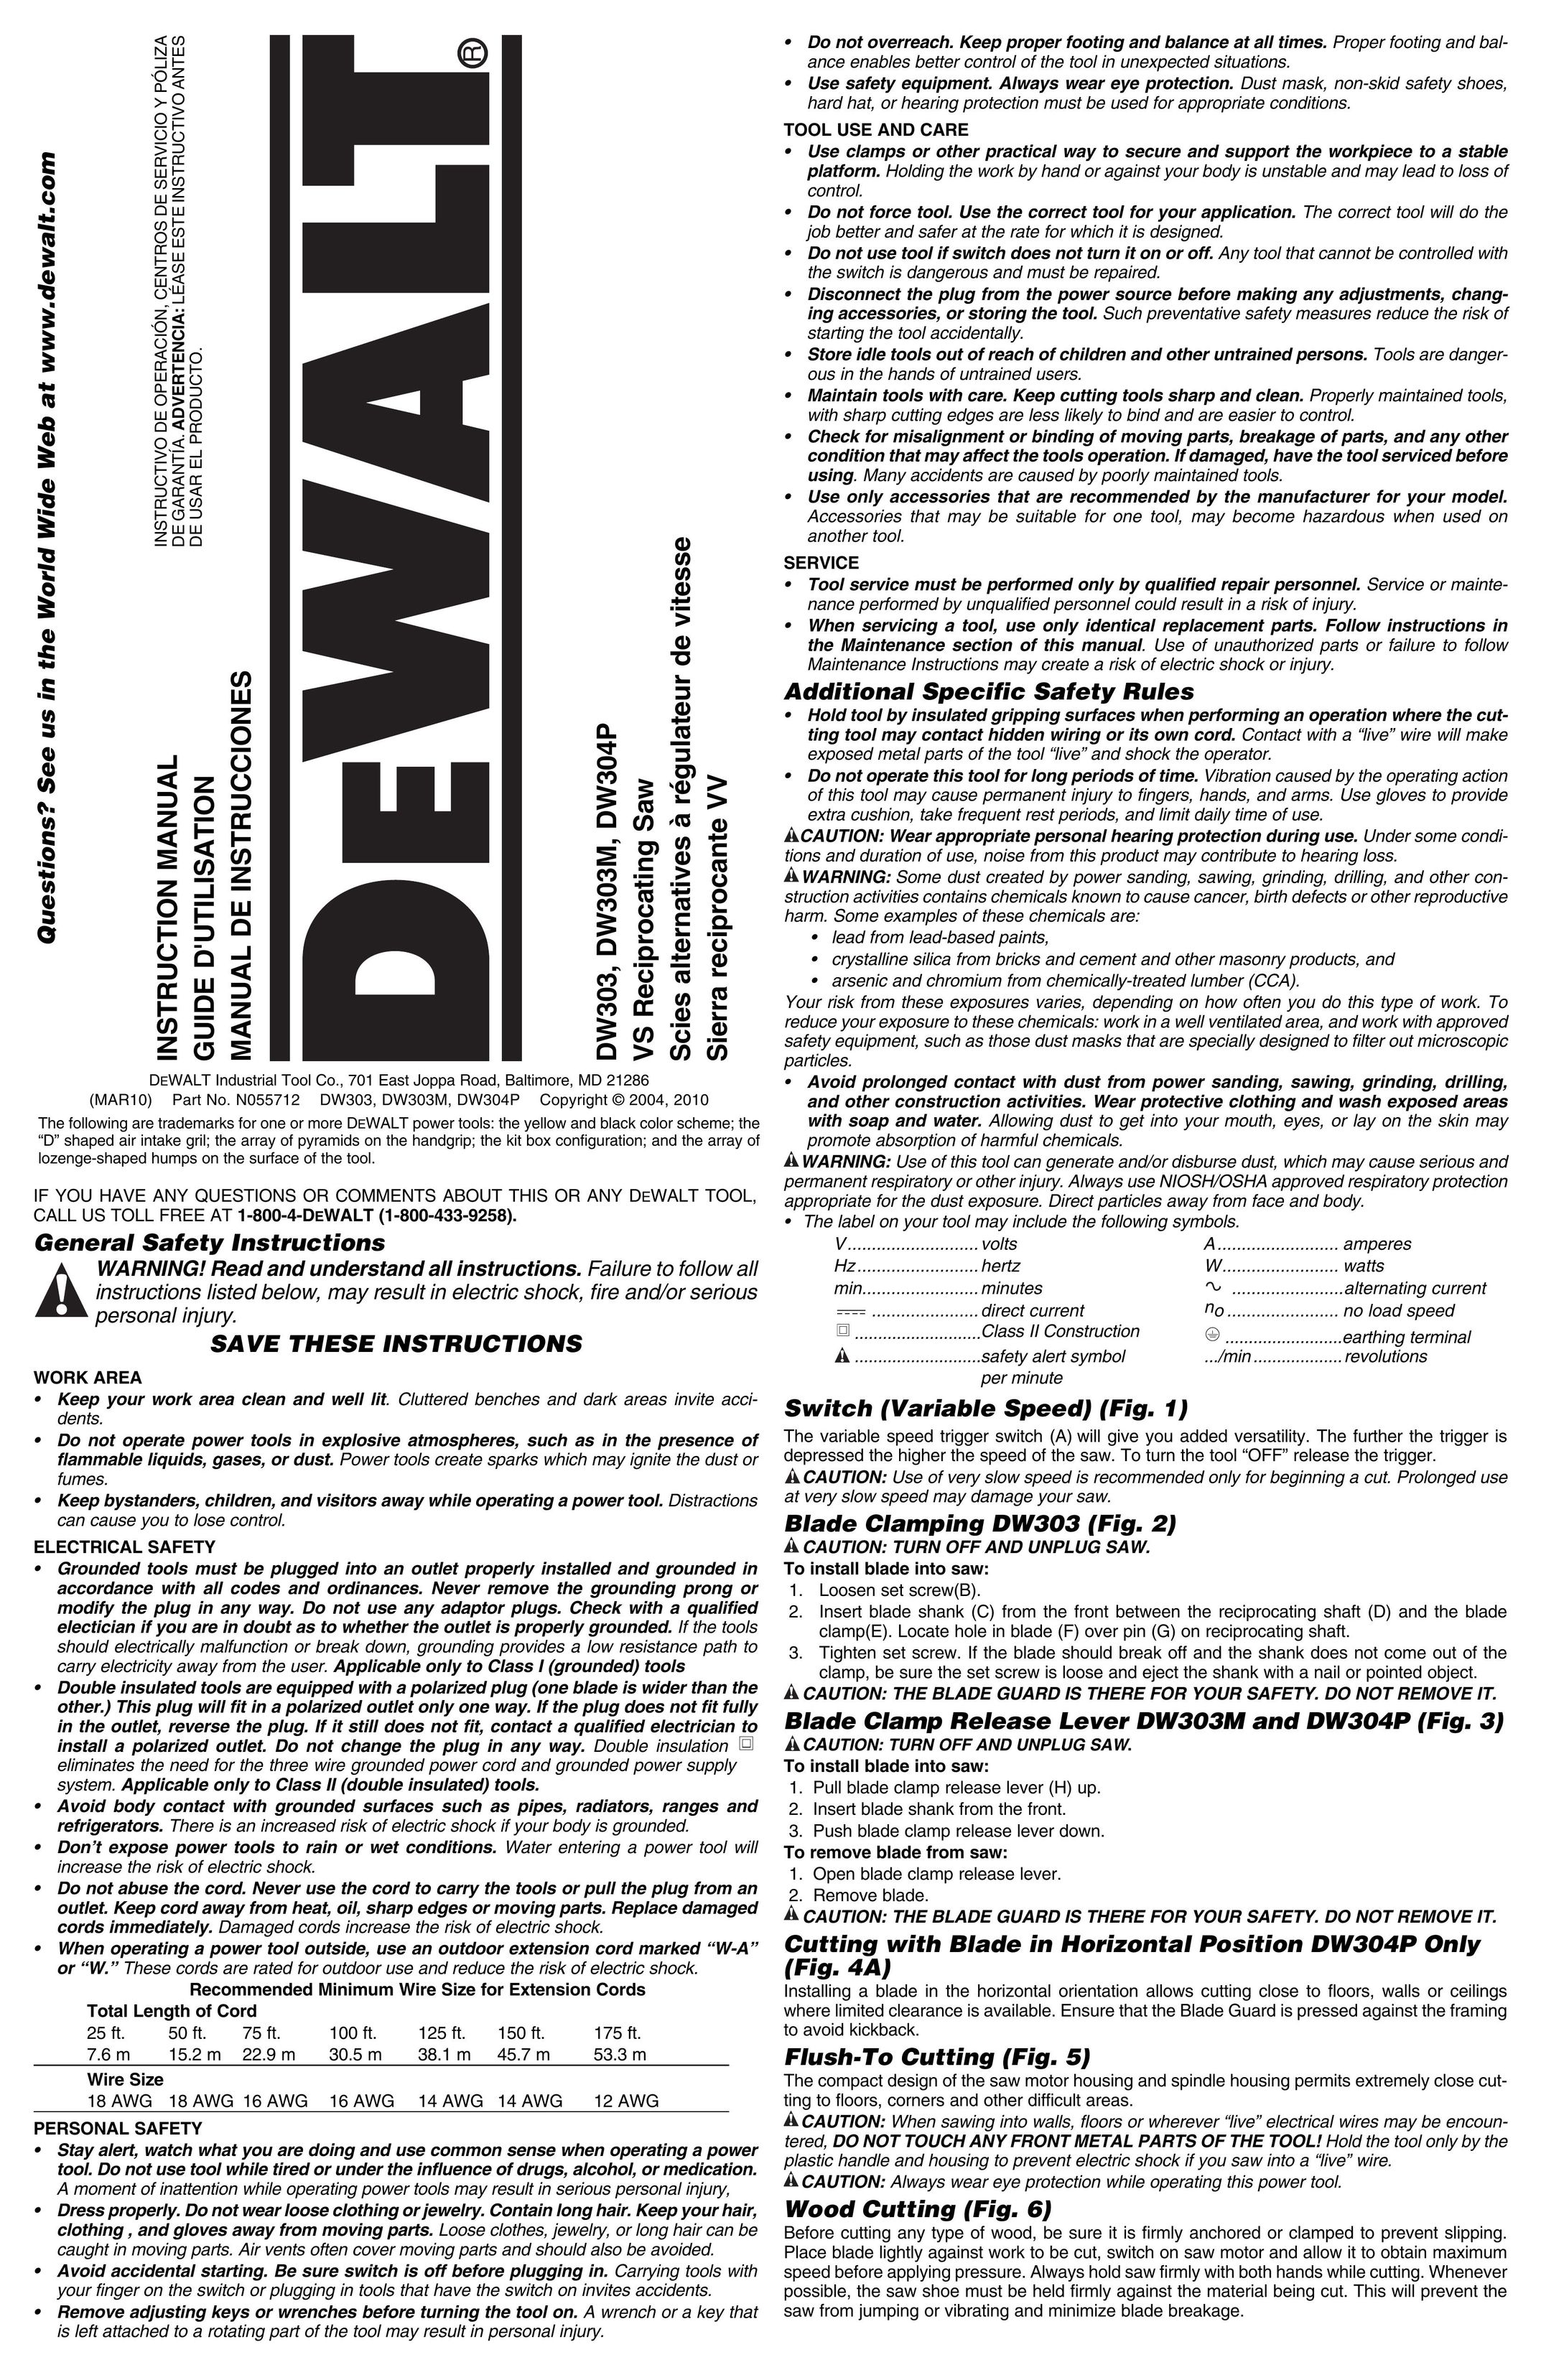 DeWalt DWE304 Cordless Saw User Manual